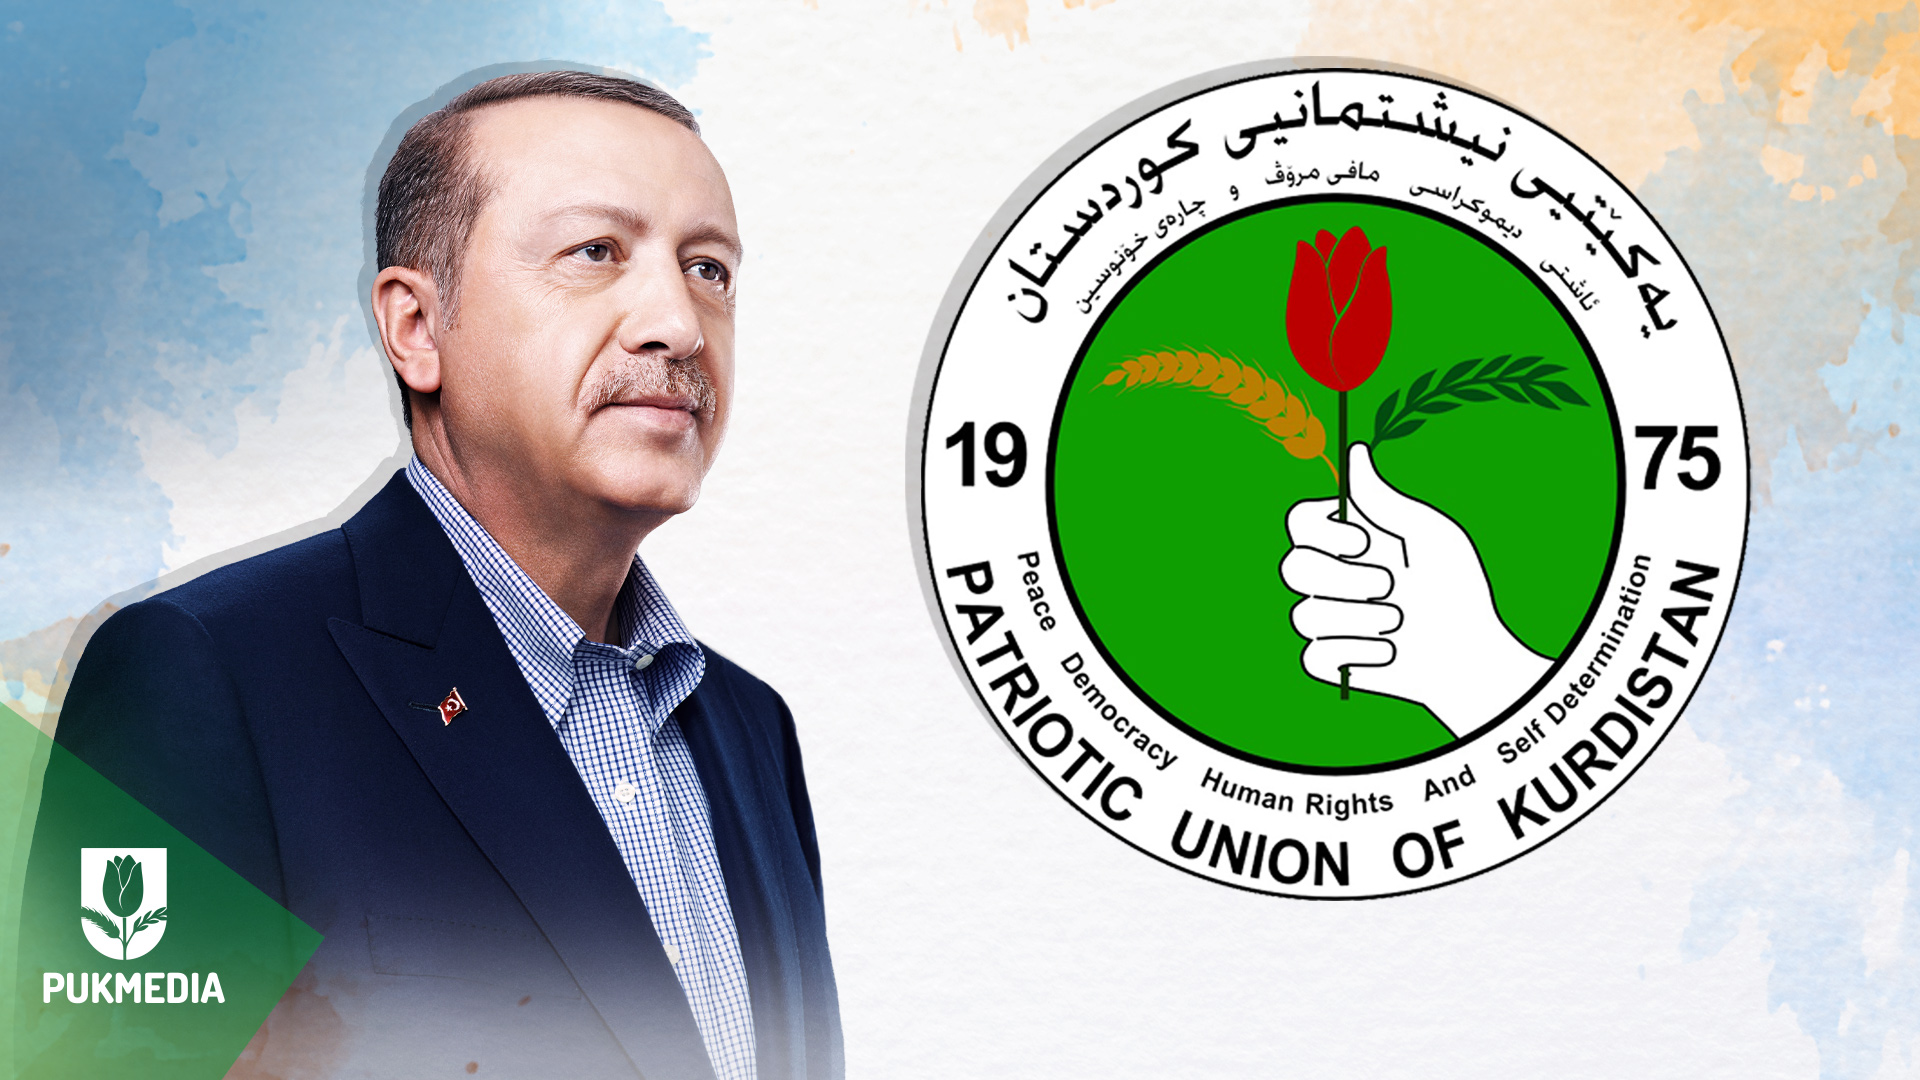  Turkish President and PUK logo.